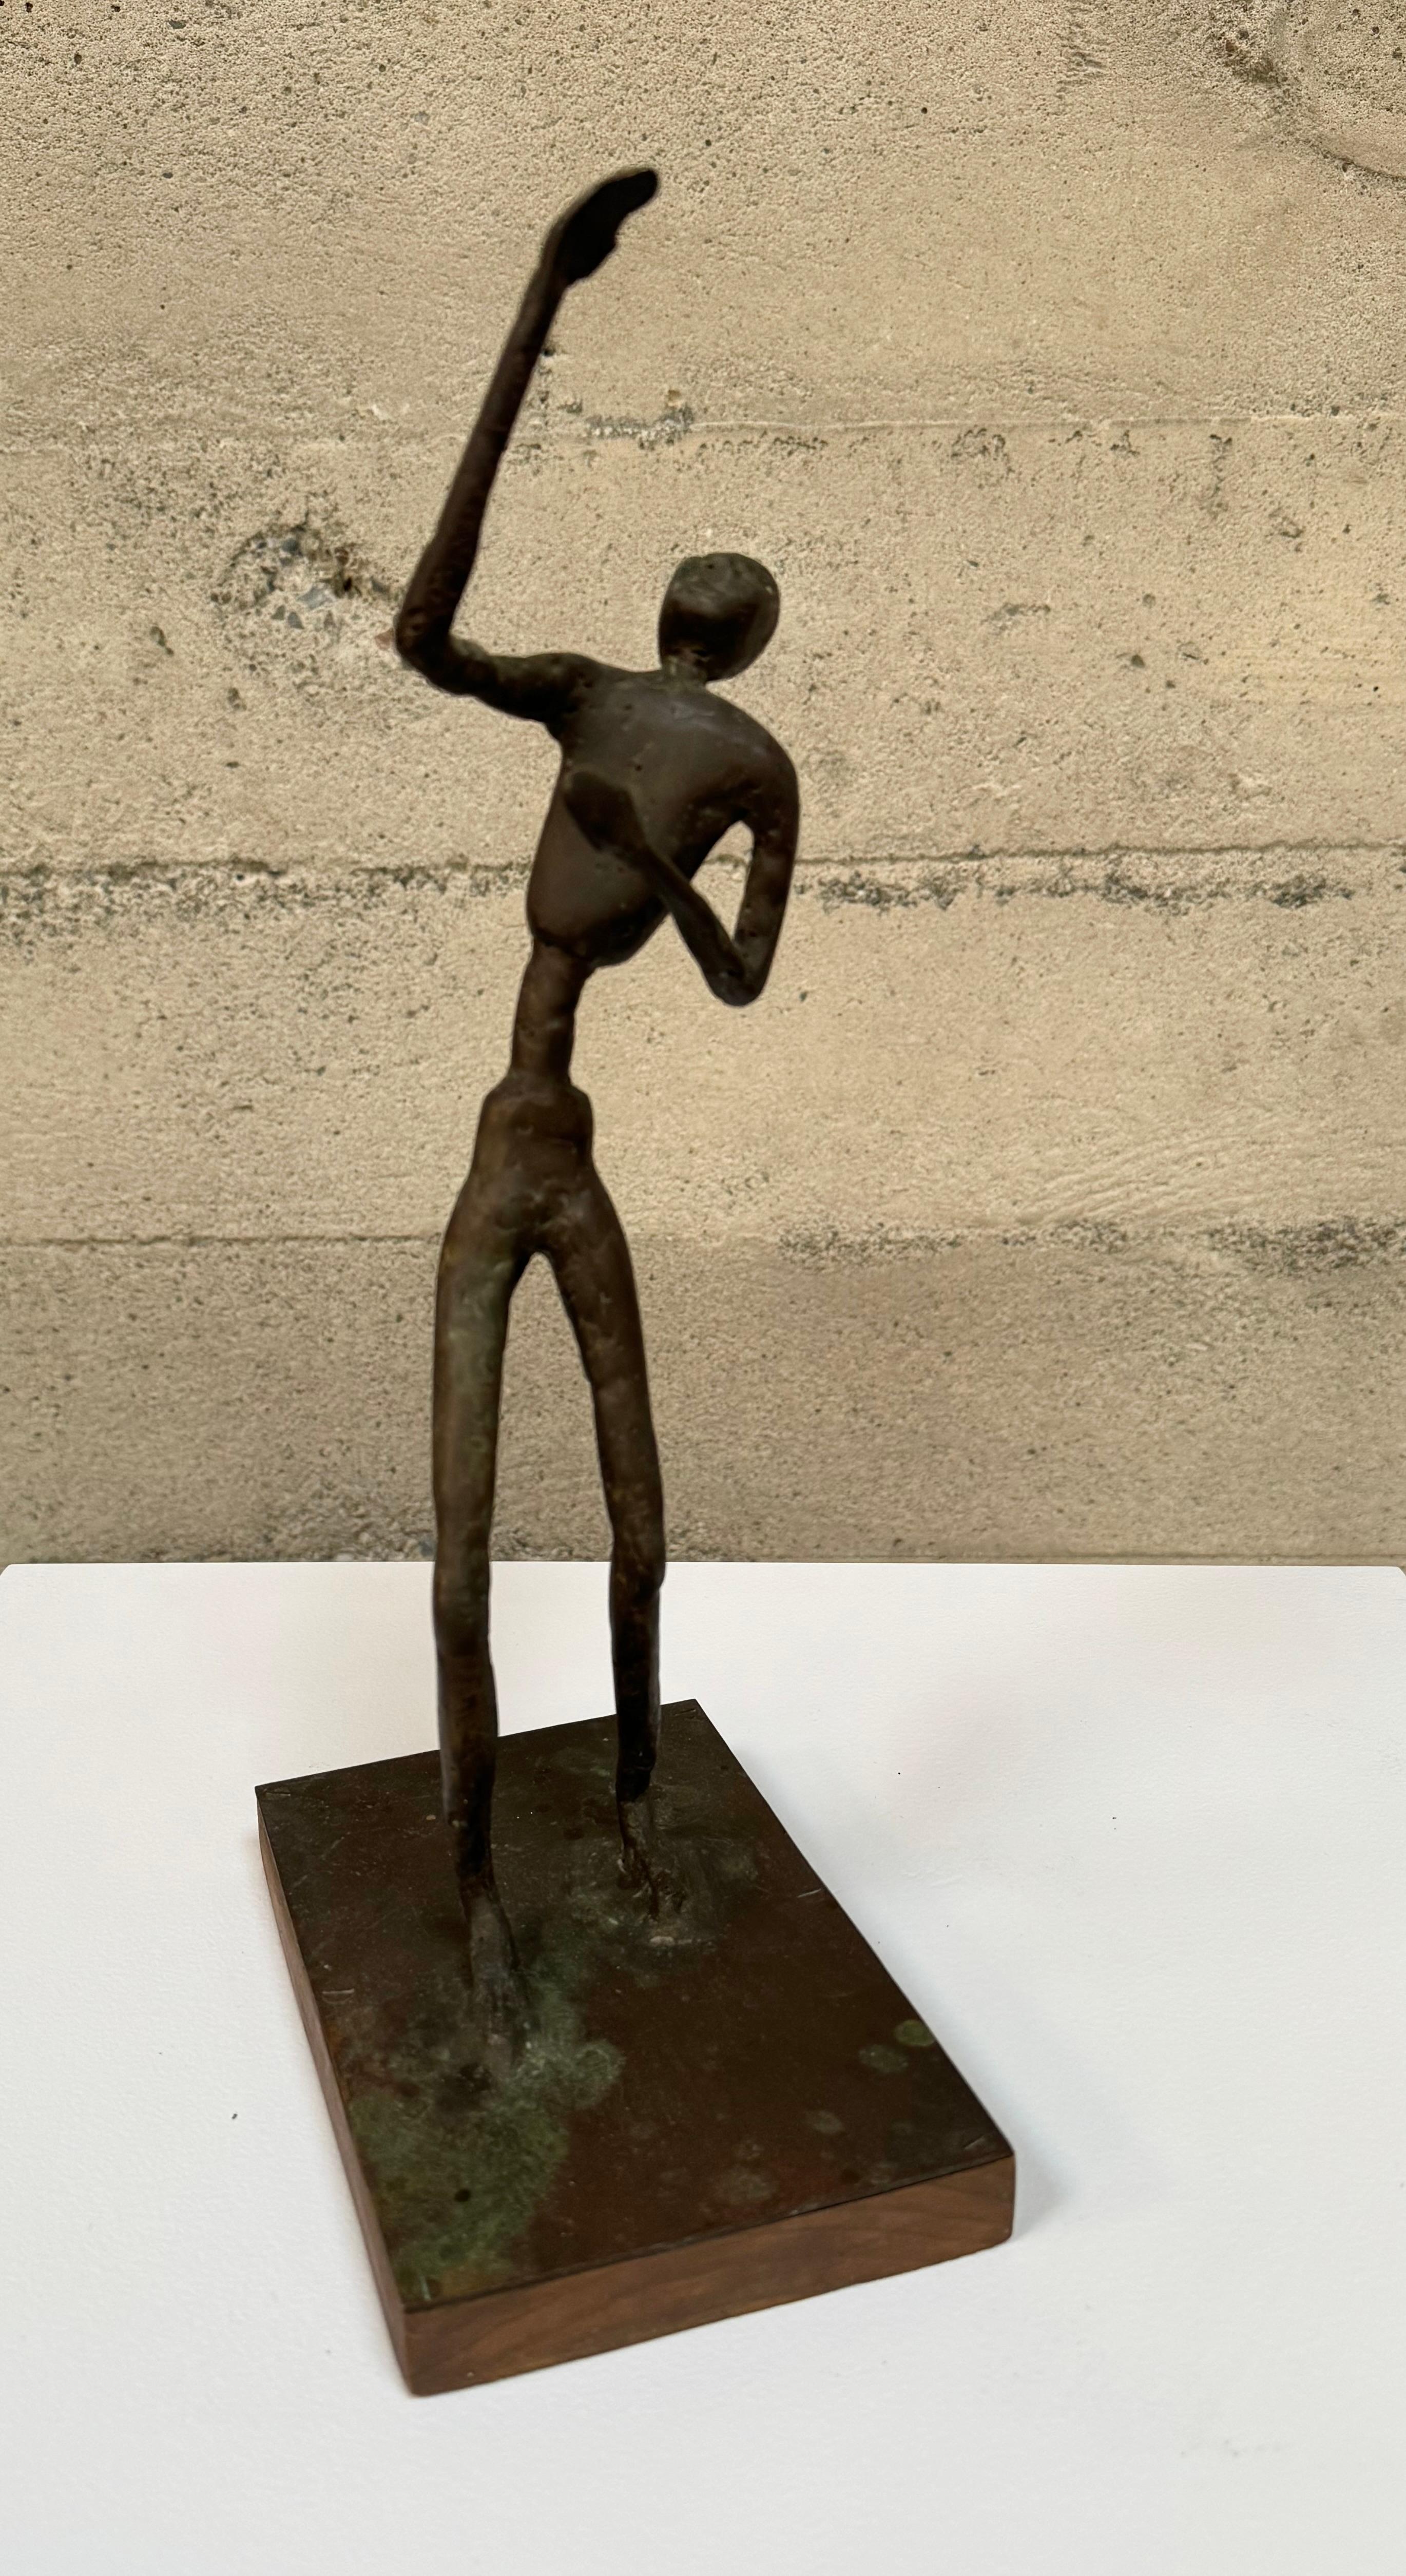 Un abstrait figuratif expressif de l'artiste de la Bay Area John Larkin, un artiste local actif dans les années 1960, mais dont on sait peu de choses. Une fine figure en bronze texturé montée sur une base en bois. La sculpture a pris une belle